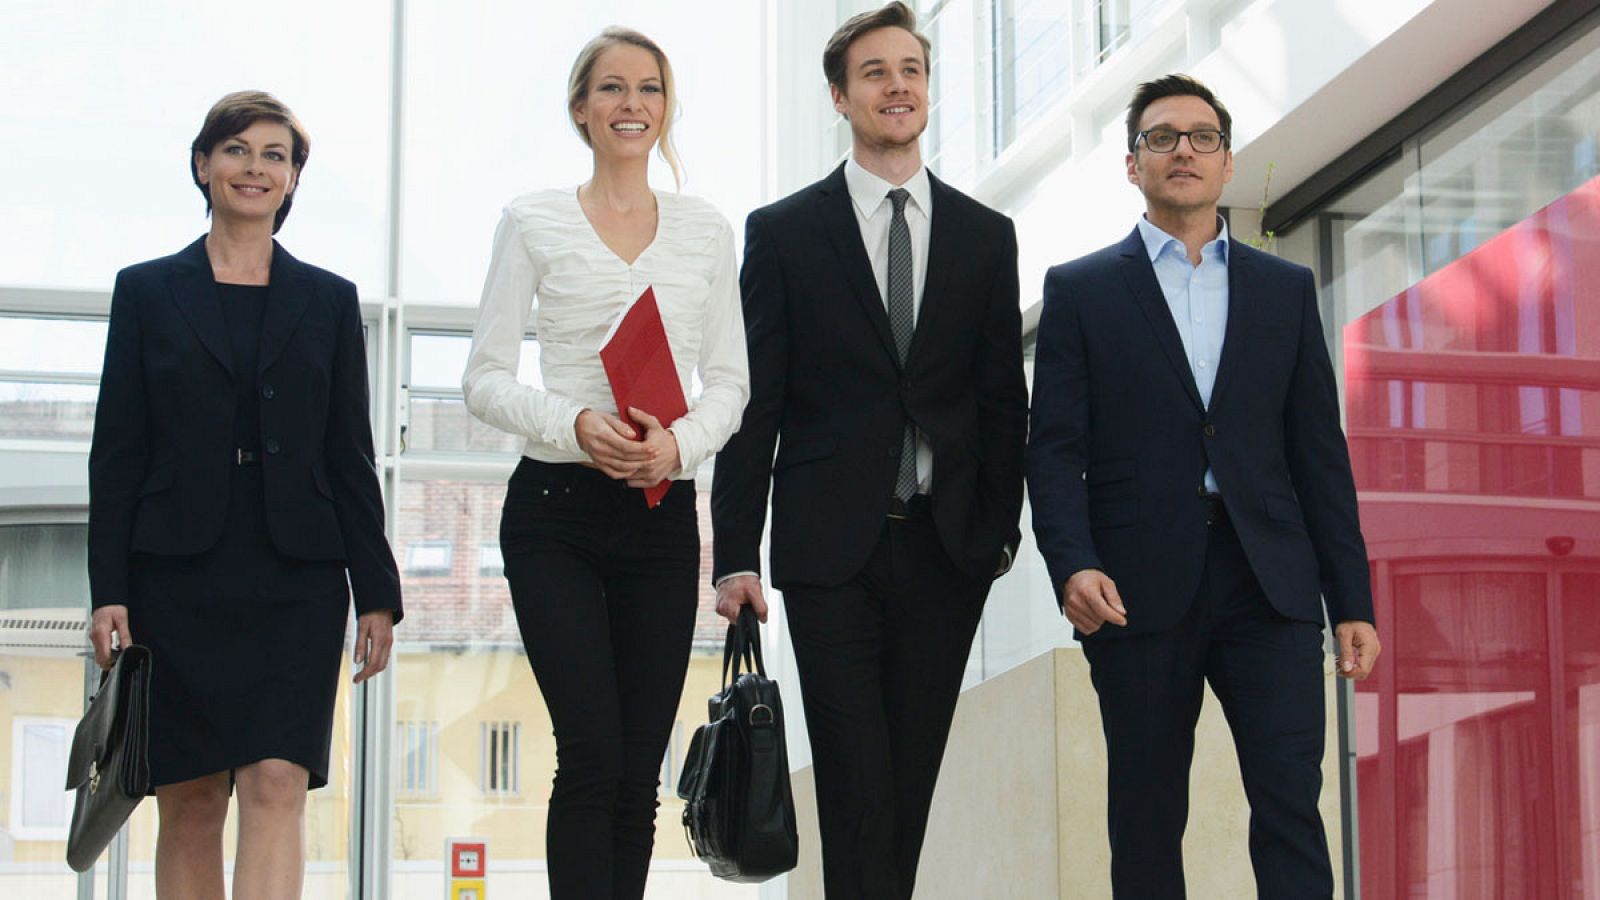 Dos mujeres y dos hombres se dirigen a una reunión de trabajo